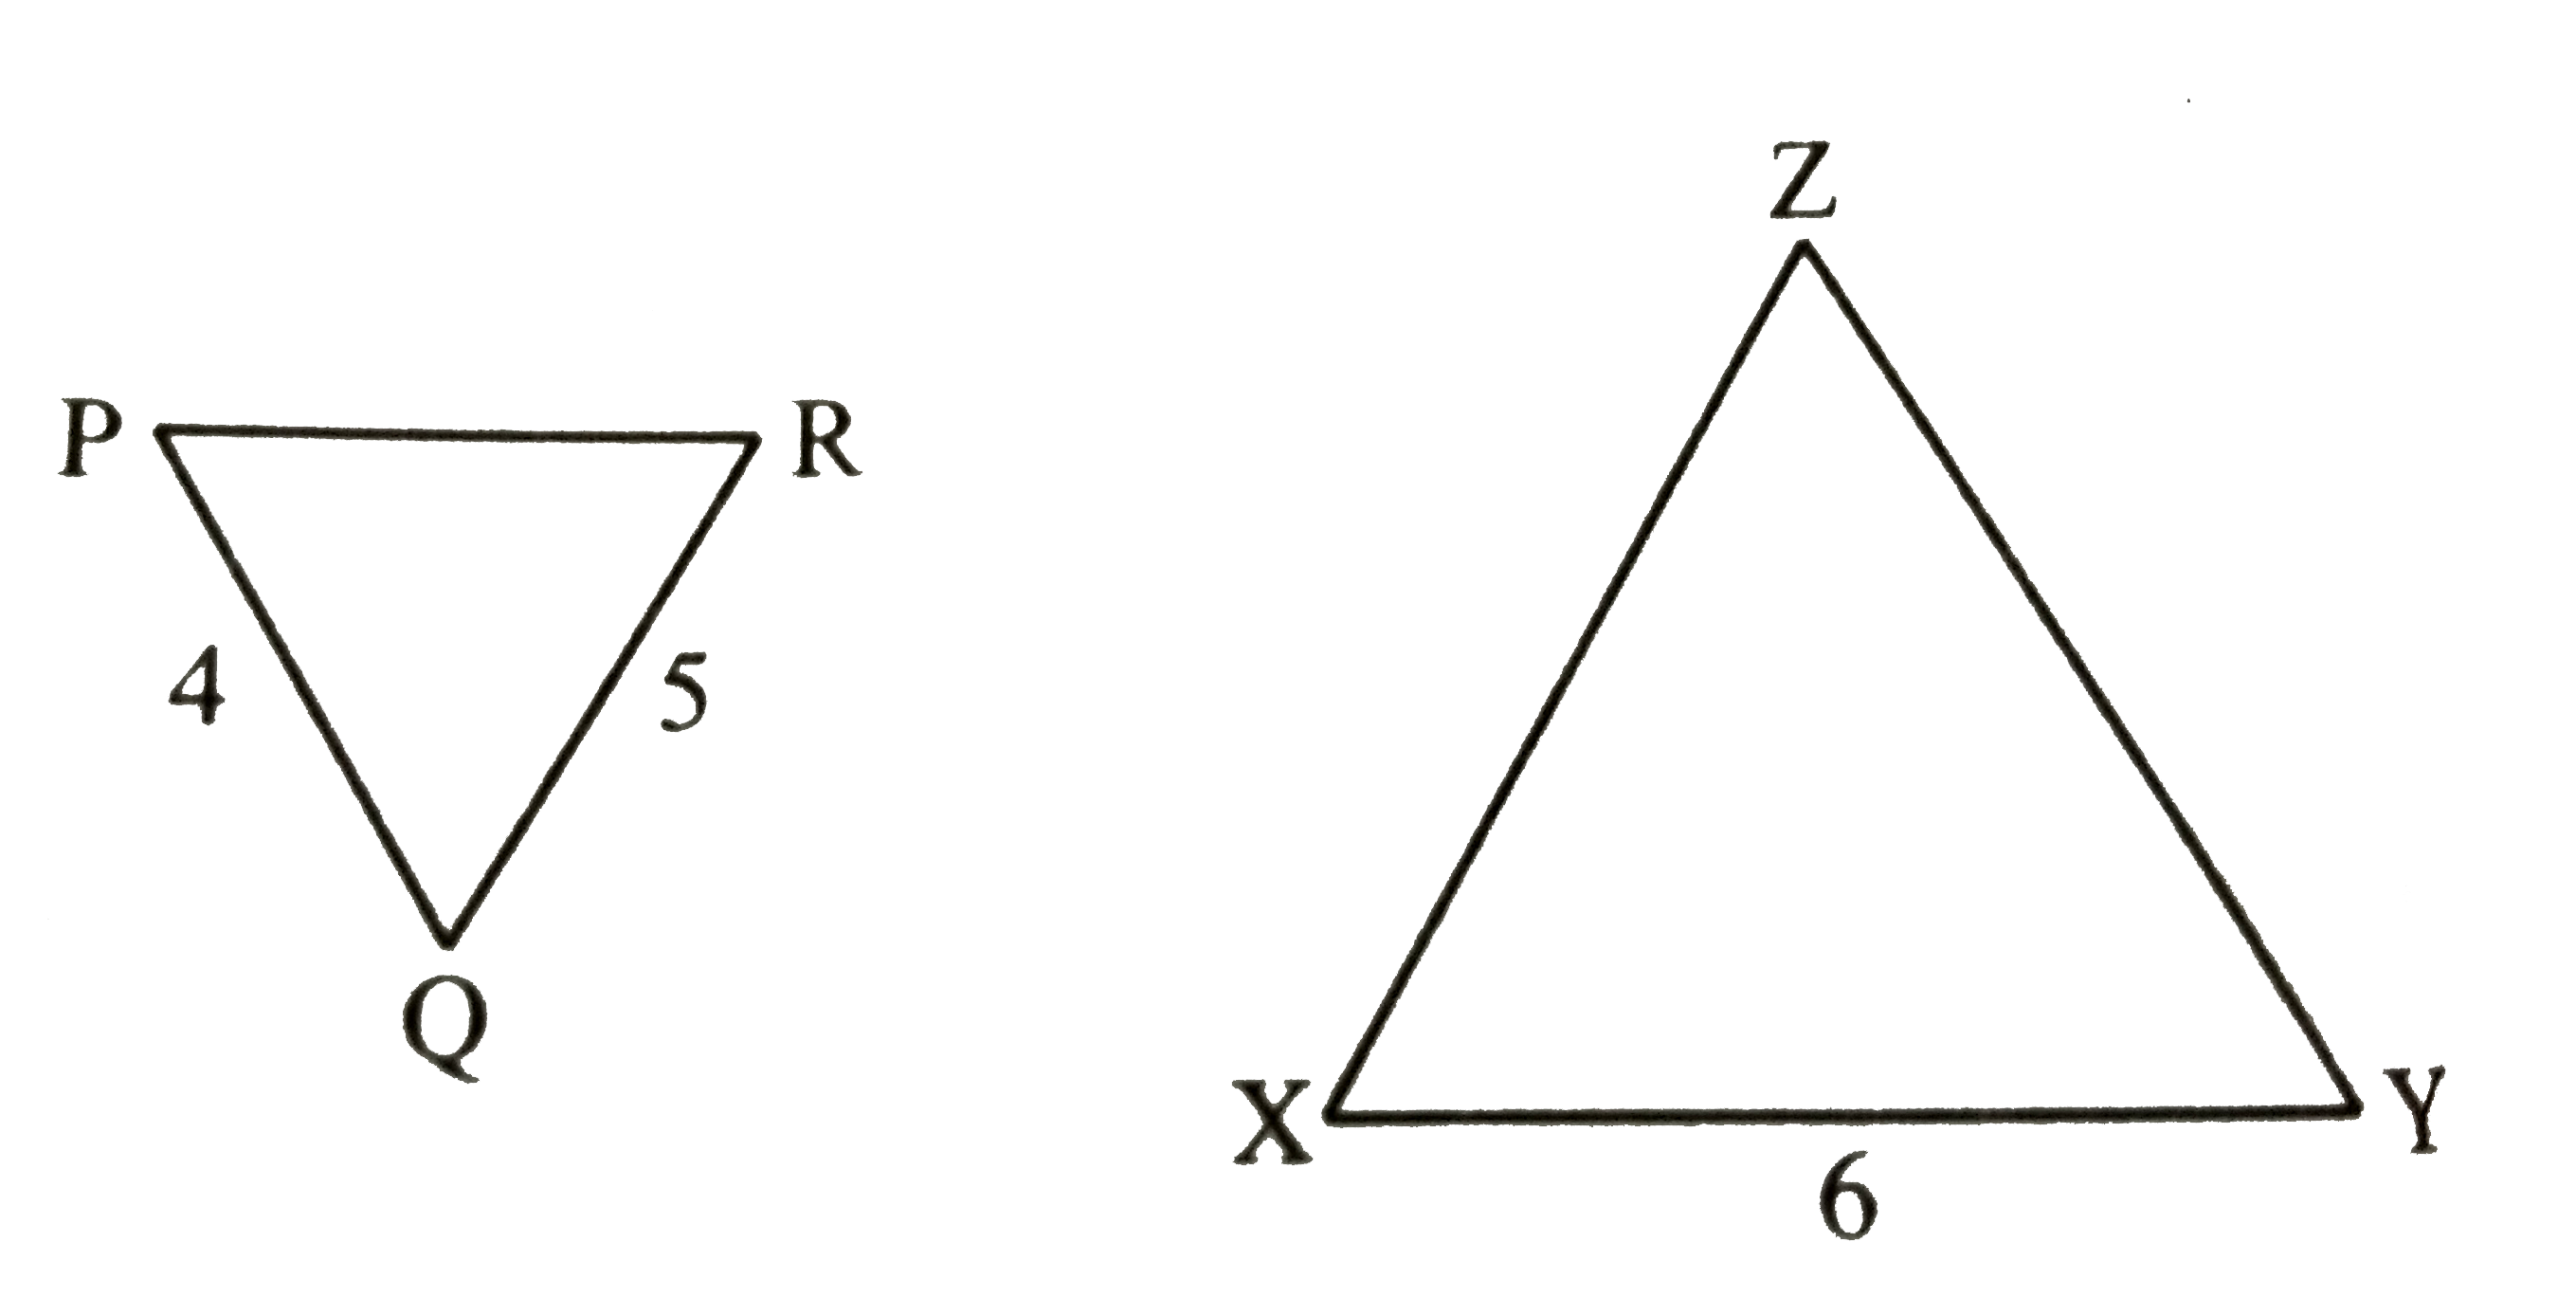 दी गई आकृति में, triangle PQR ~ triangle XYZ यदि PQ = 4 सेमी०, QR = 5  सेमी० तथा XY = 6 सेमी० है तो YZ ज्ञात कीजिए |